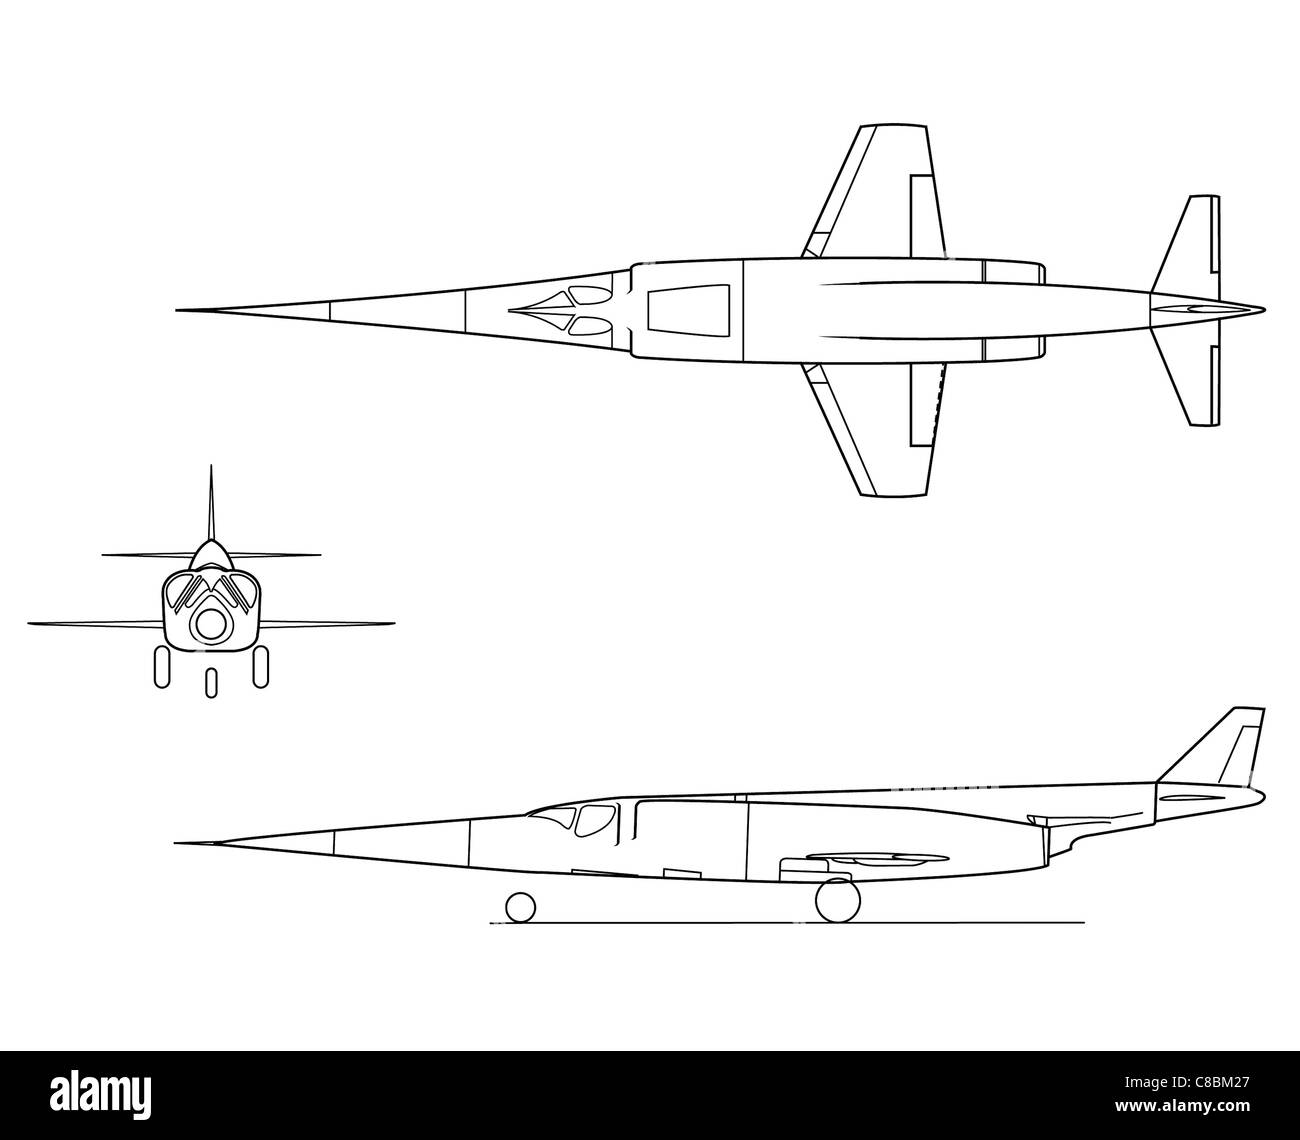 Desarmamiento nitrógeno esquina 3 aviones ver ilustración X 3 vuelo sostenido a Mach 2+, bajo las alas de  relación de aspecto Fotografía de stock - Alamy